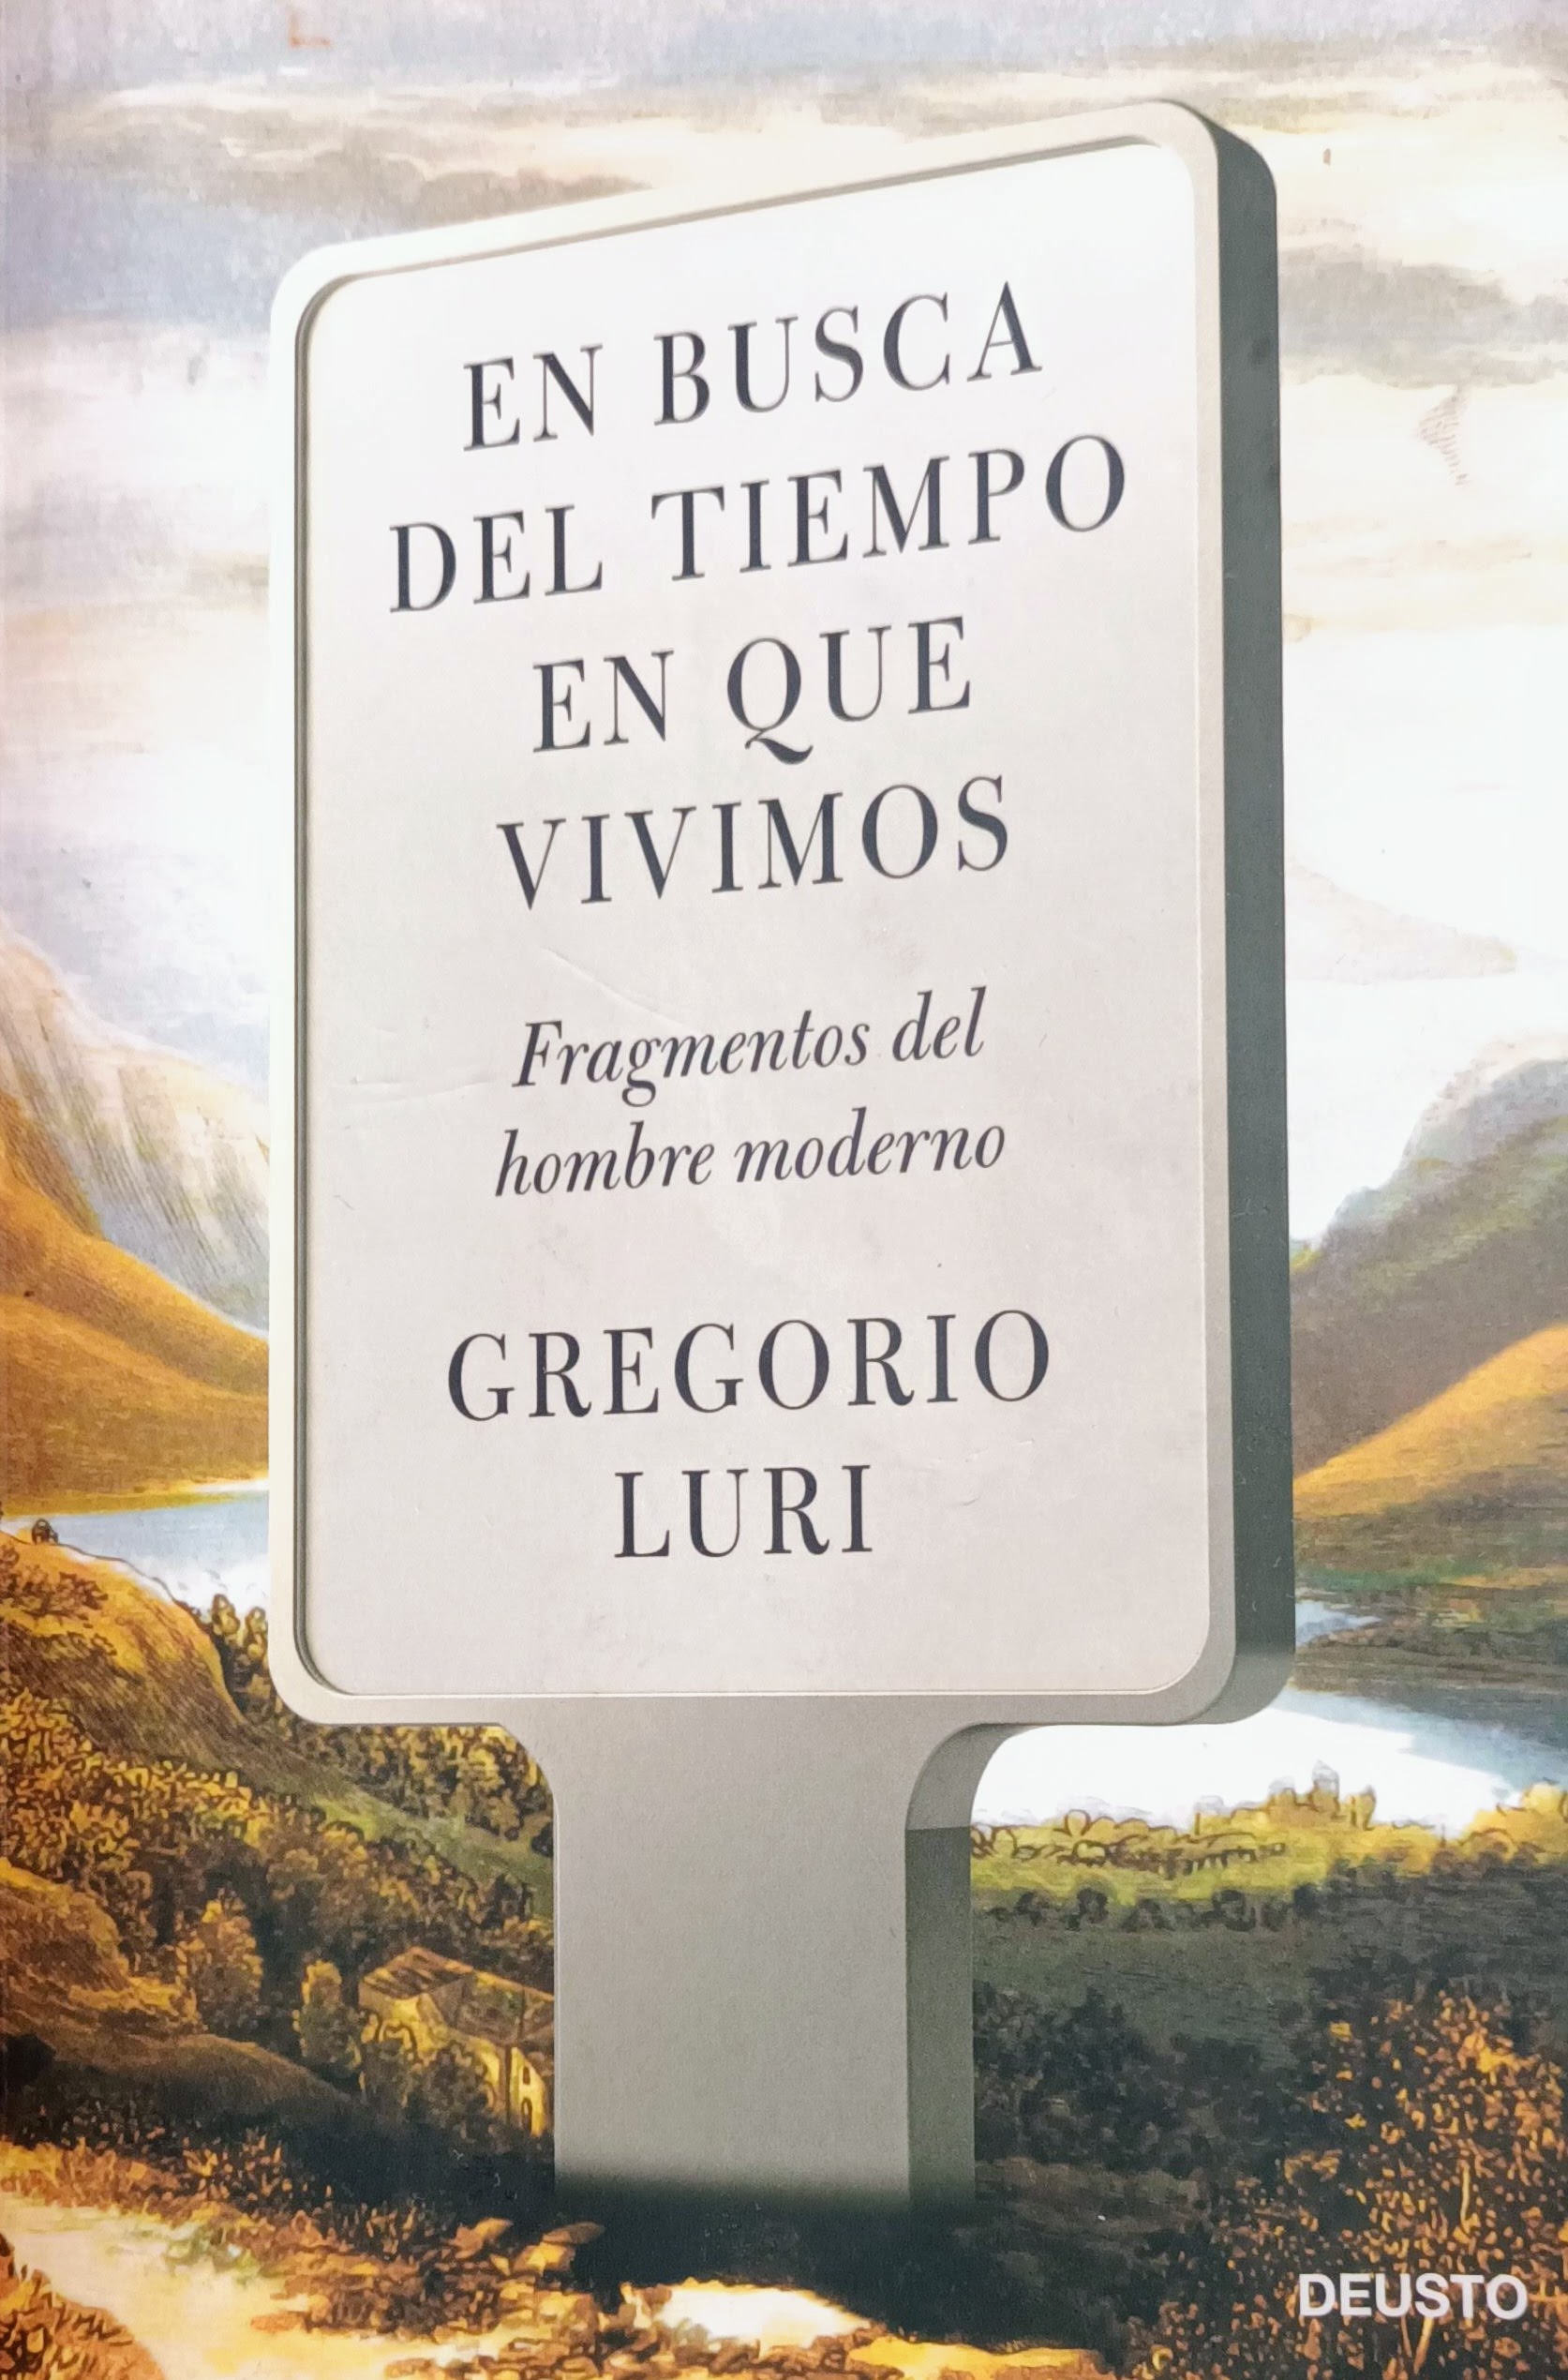 Book cover of "En busca del tiempo en que vivimos"